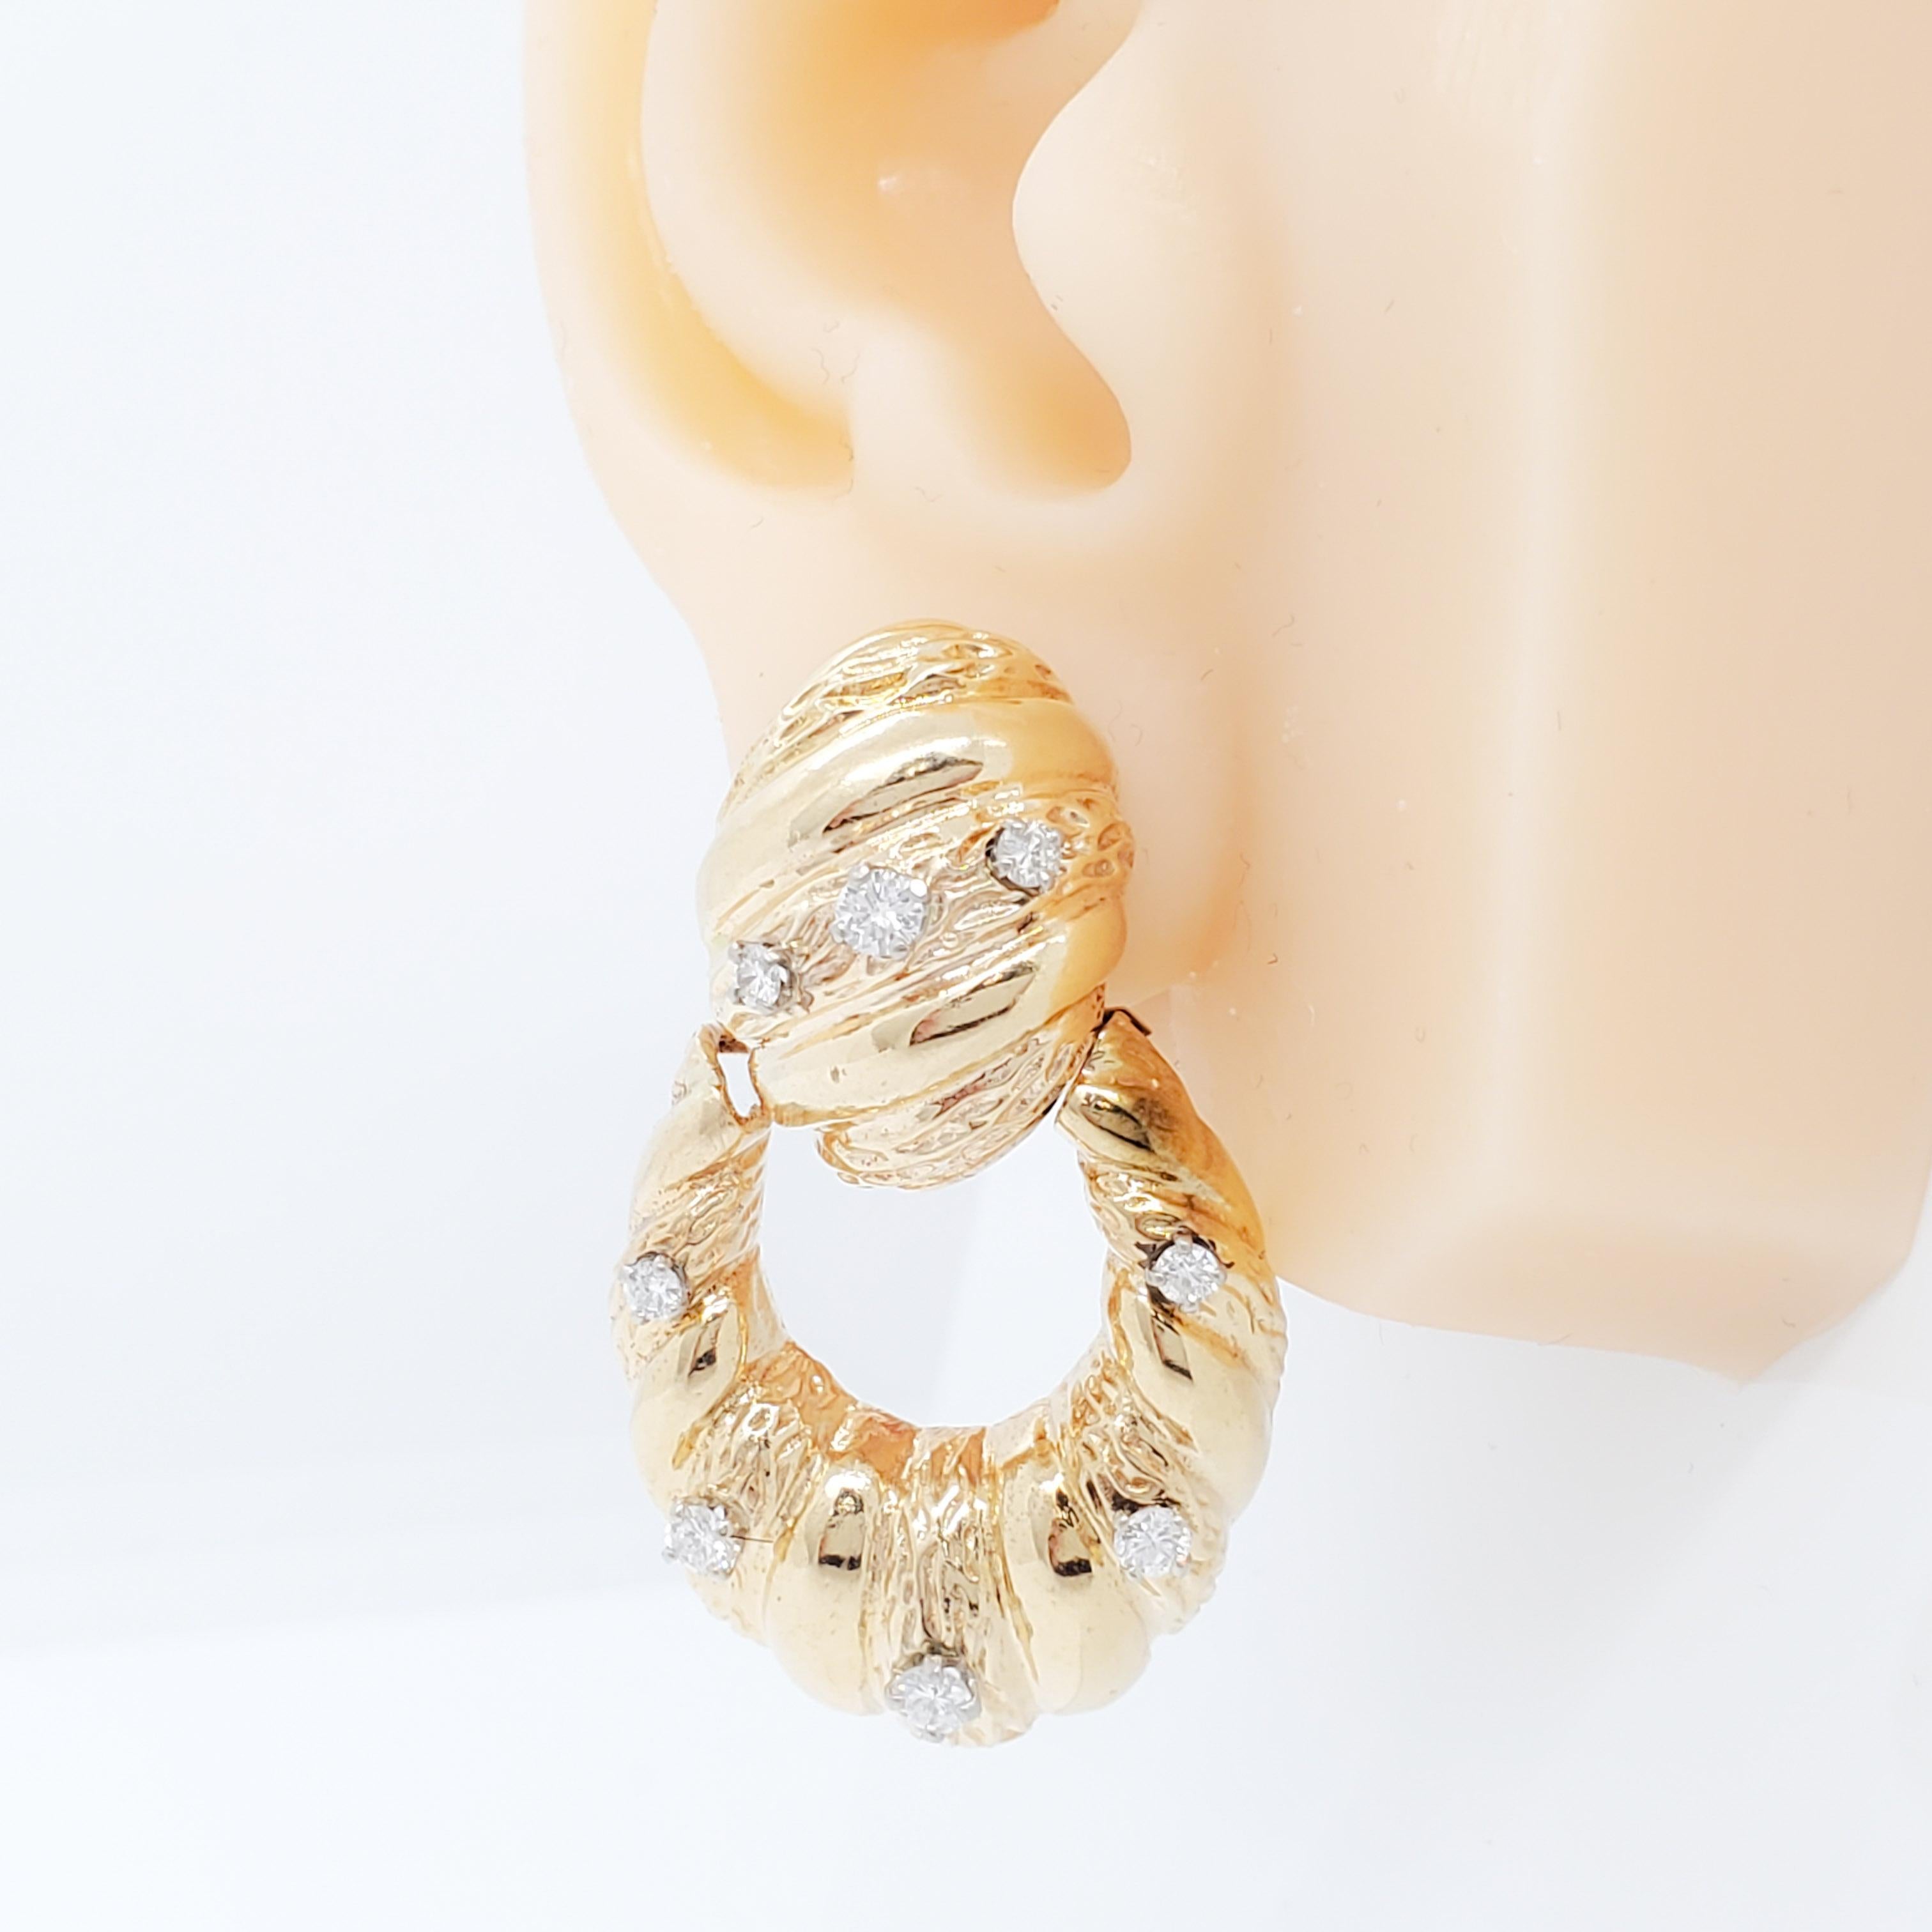 Schöne Ohrringclips mit 0,75 ct. weißen runden Diamanten von guter Qualität.  Handgefertigt in 18k Gelbgold.  Typisches Design eines Türklopfers.